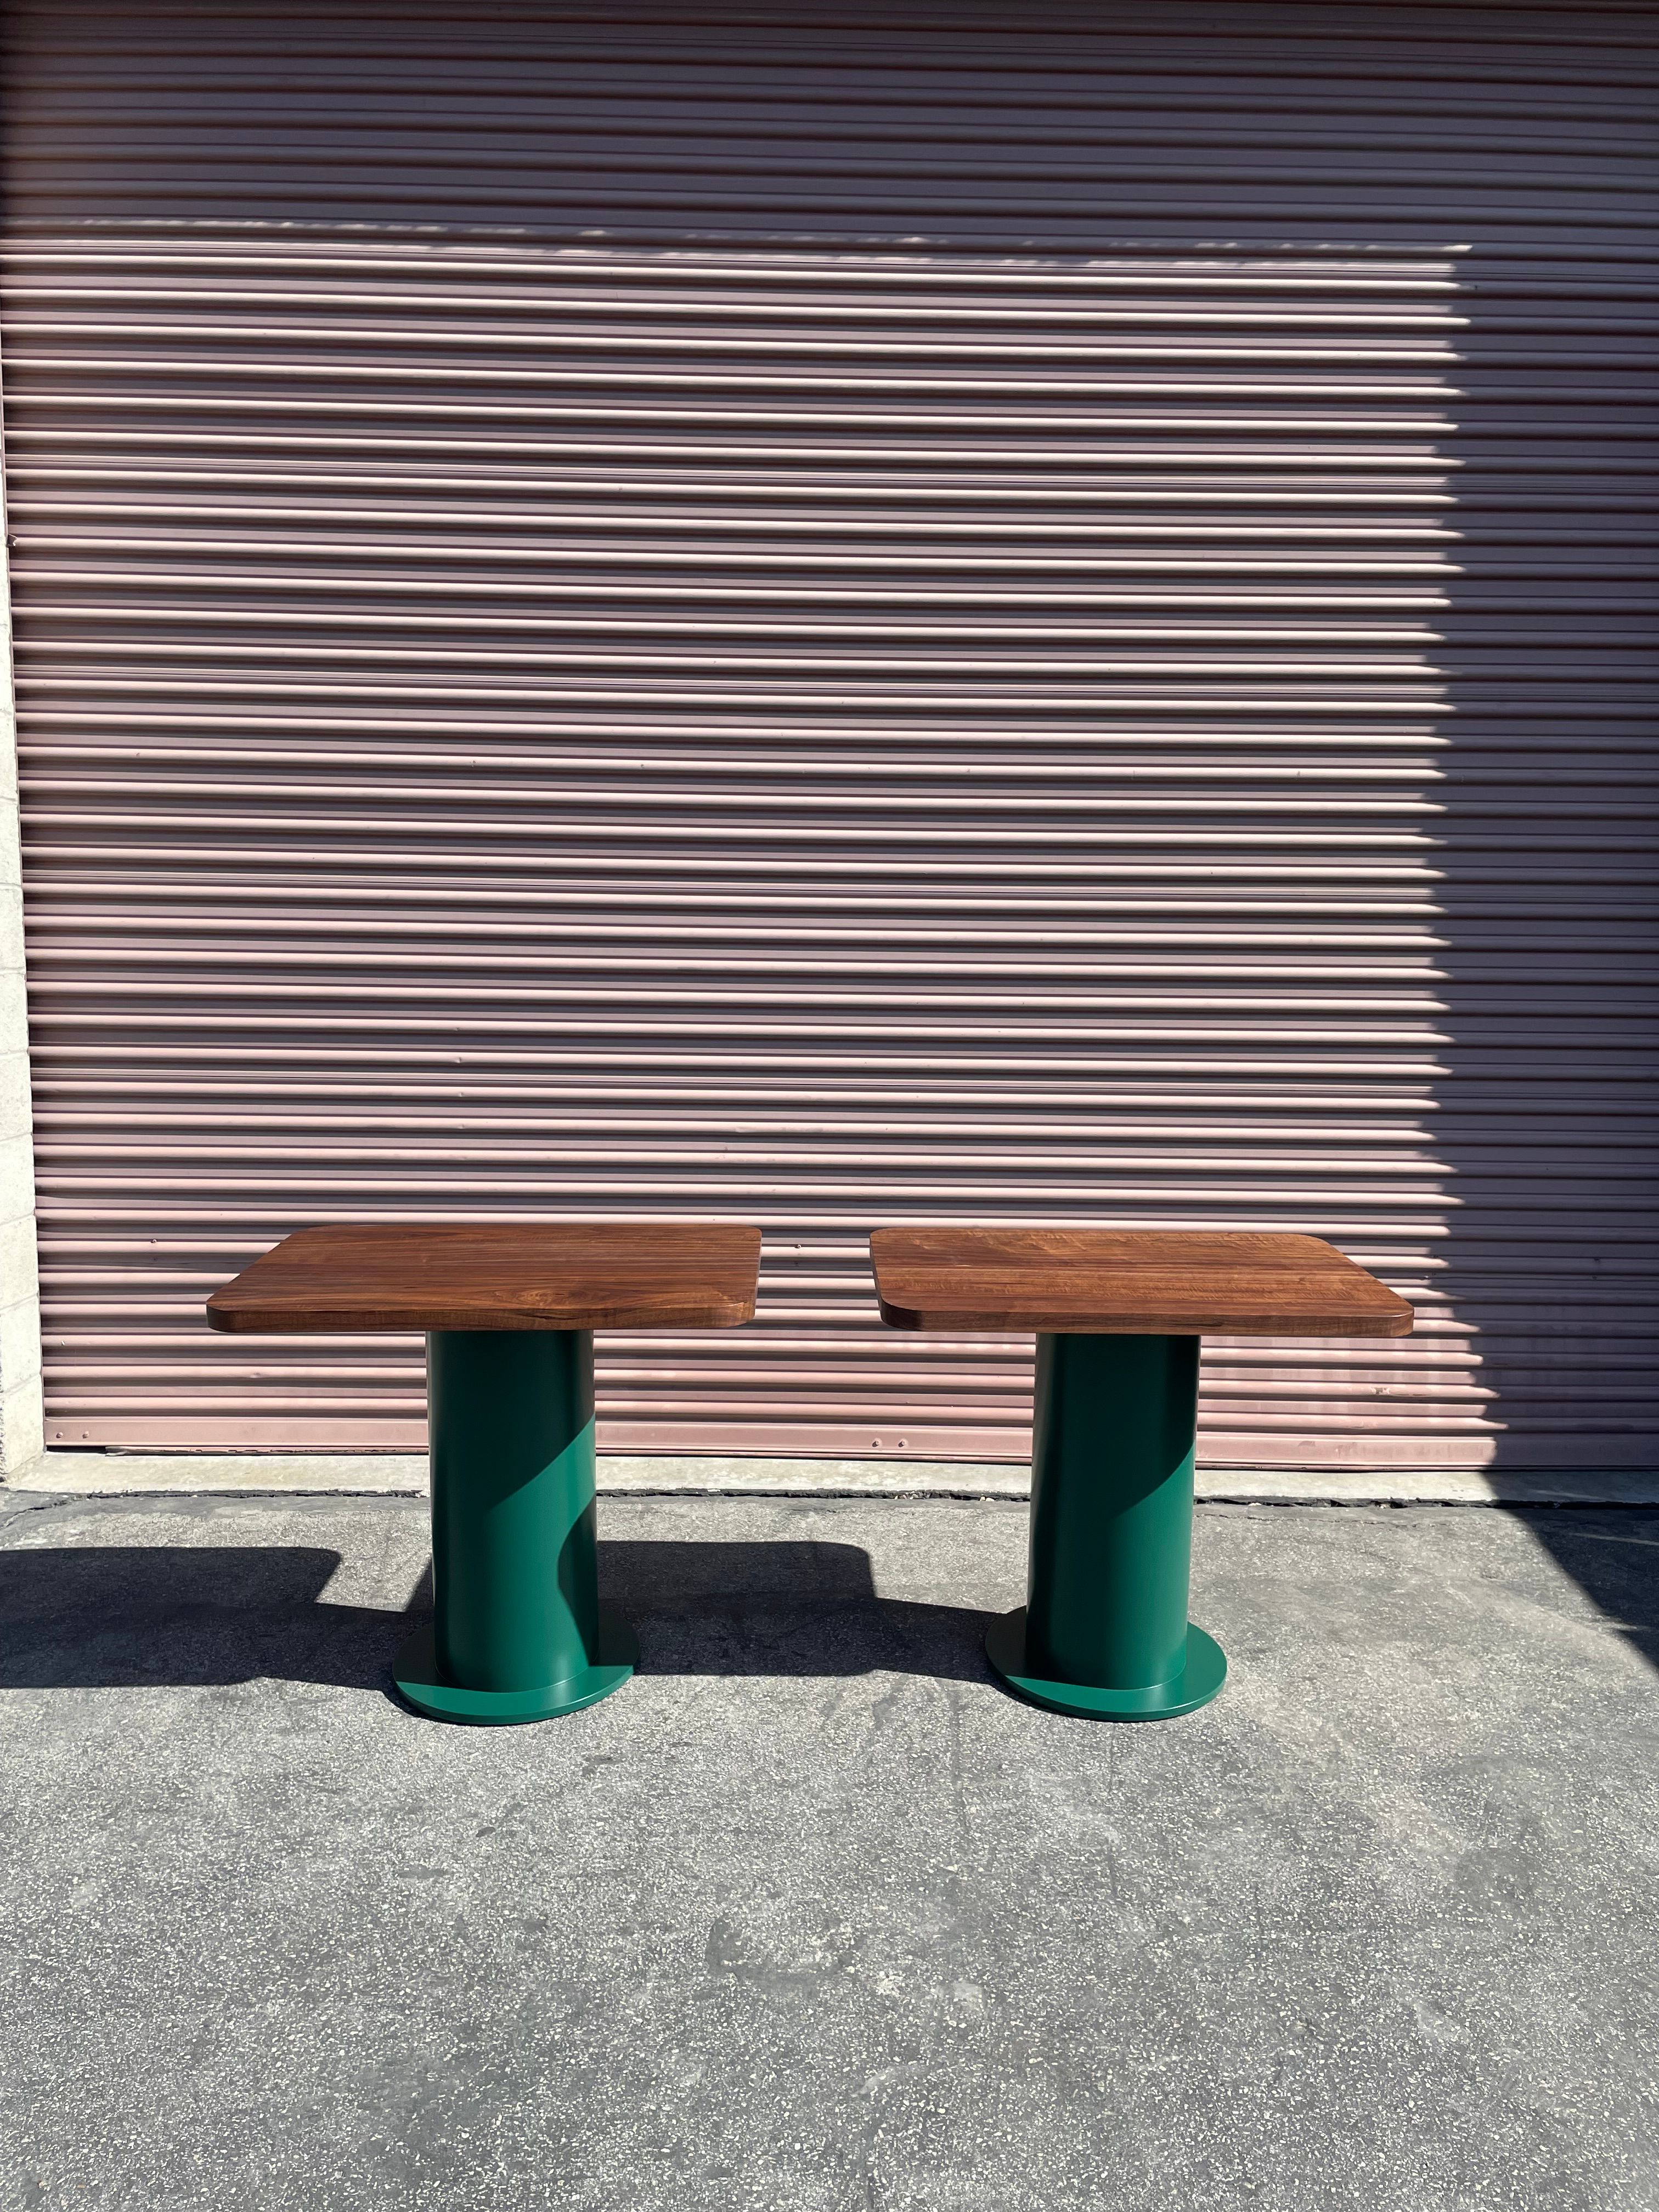  Pedestal Tables - Folklor LA product image 5